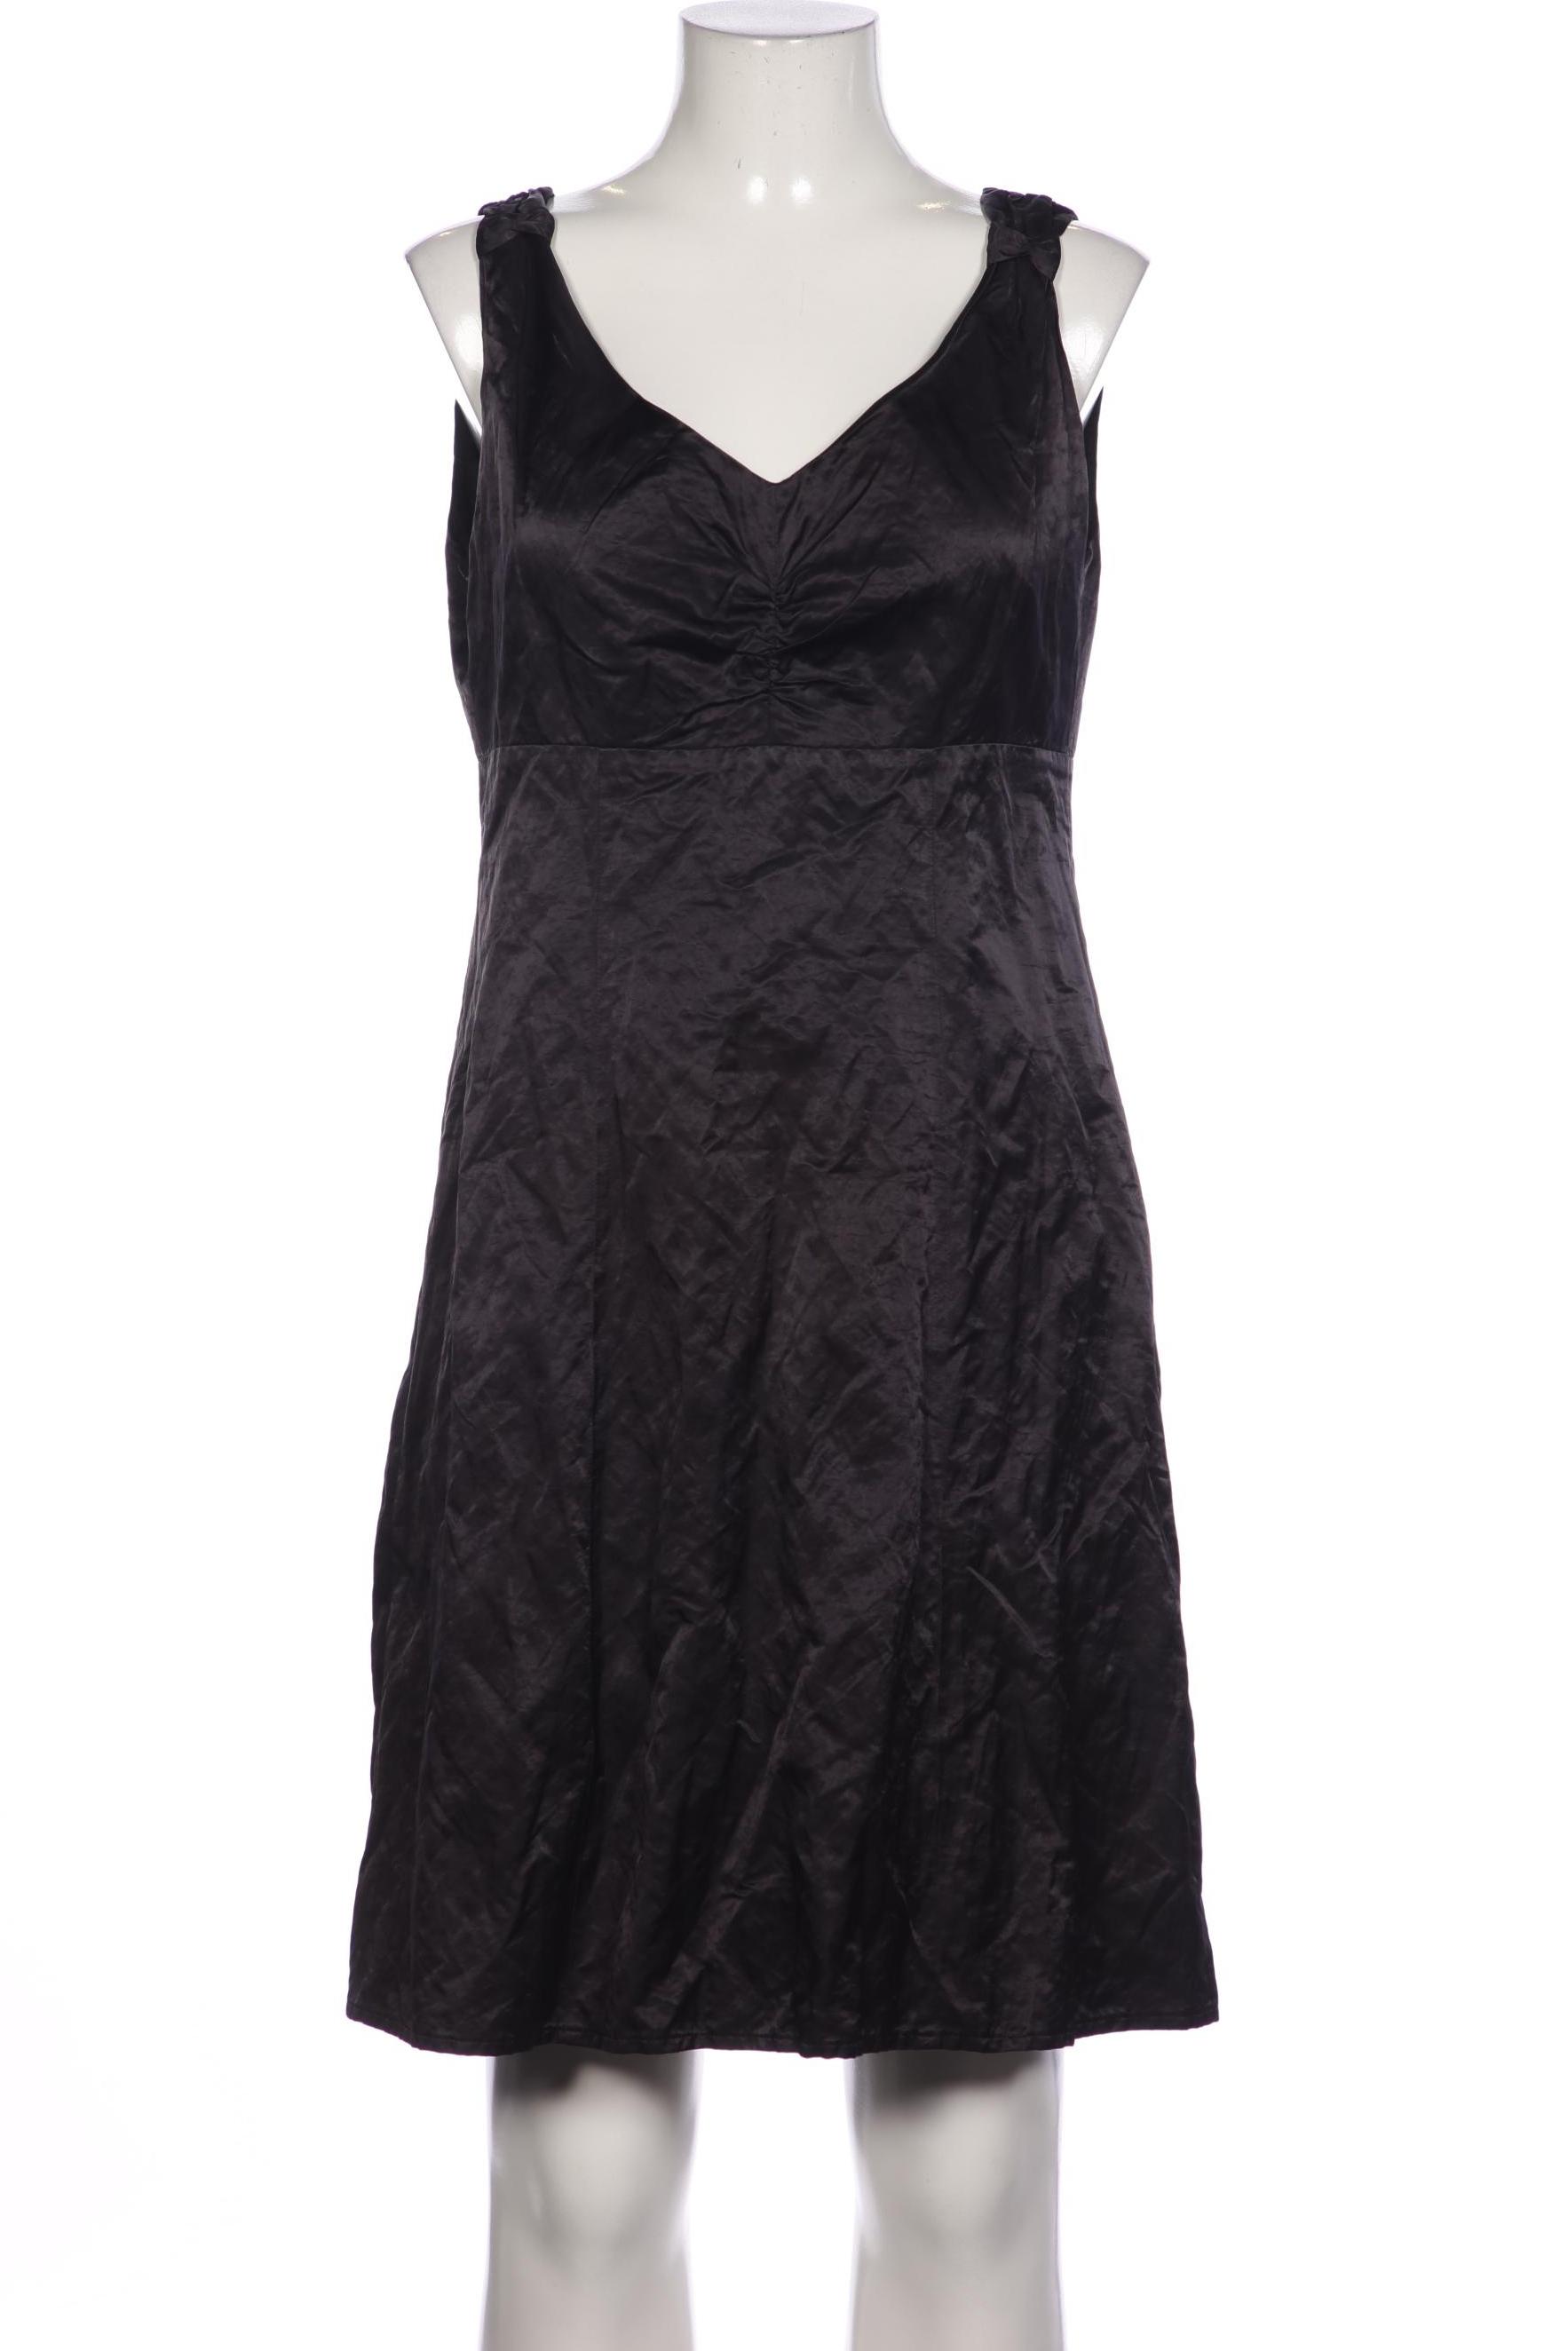 Luisa Cerano Damen Kleid, schwarz, Gr. 40 von LUISA CERANO